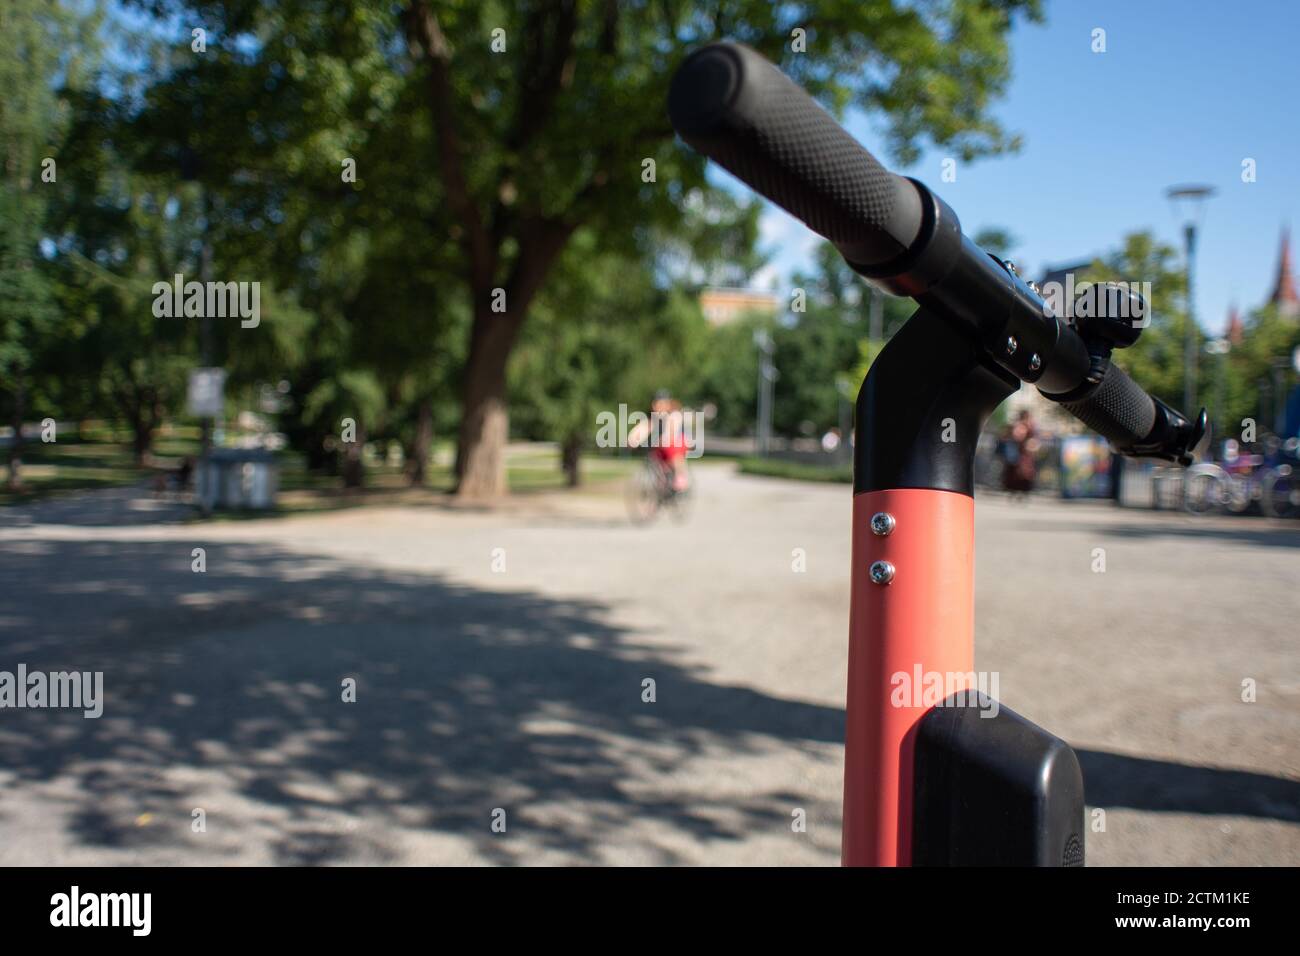 Tampere, Finnland - 26. JULI 2019. Eine Silhouette einer allein fahrenden Radfahrerin im öffentlichen Park an einem sonnigen Sommertag. Stockfoto